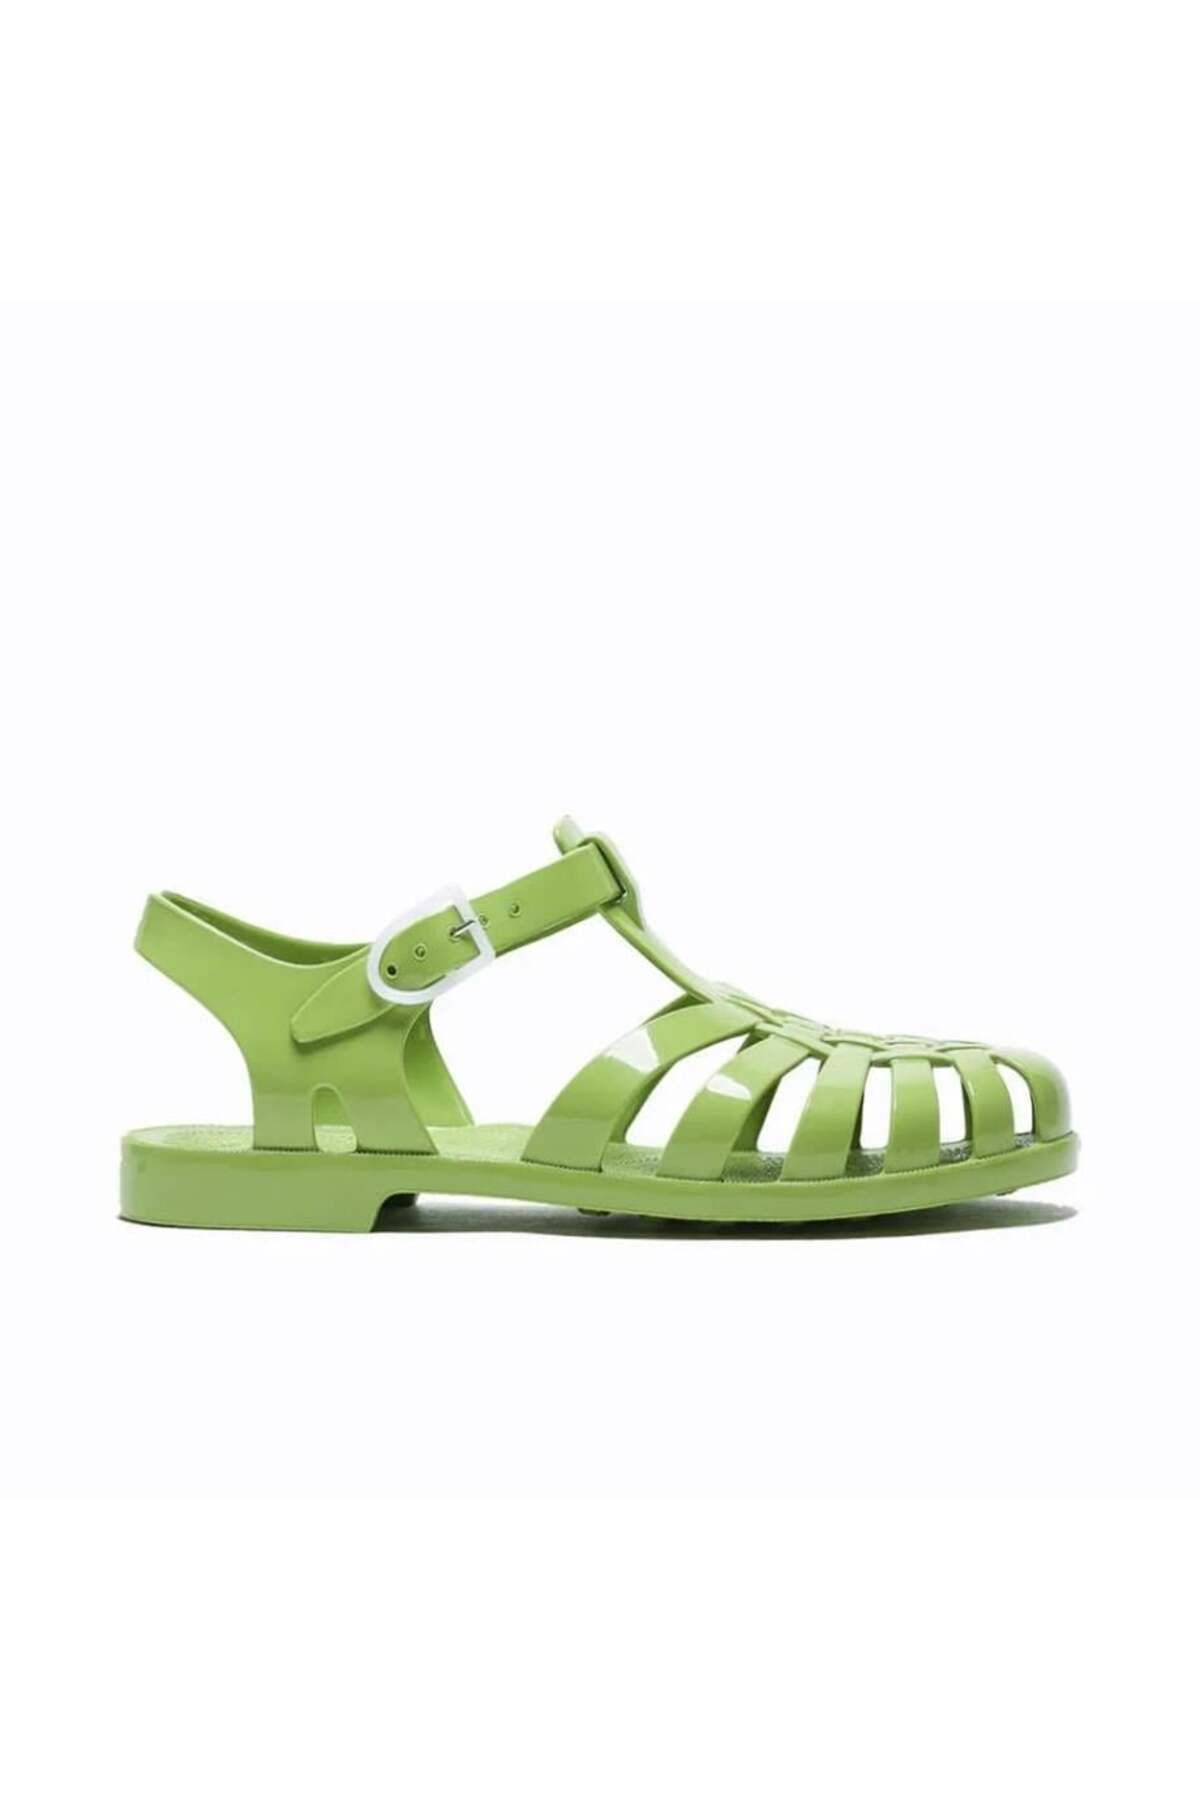 MEDUSE Sun Olive Sandals - Kadın Sandalet Yeşil